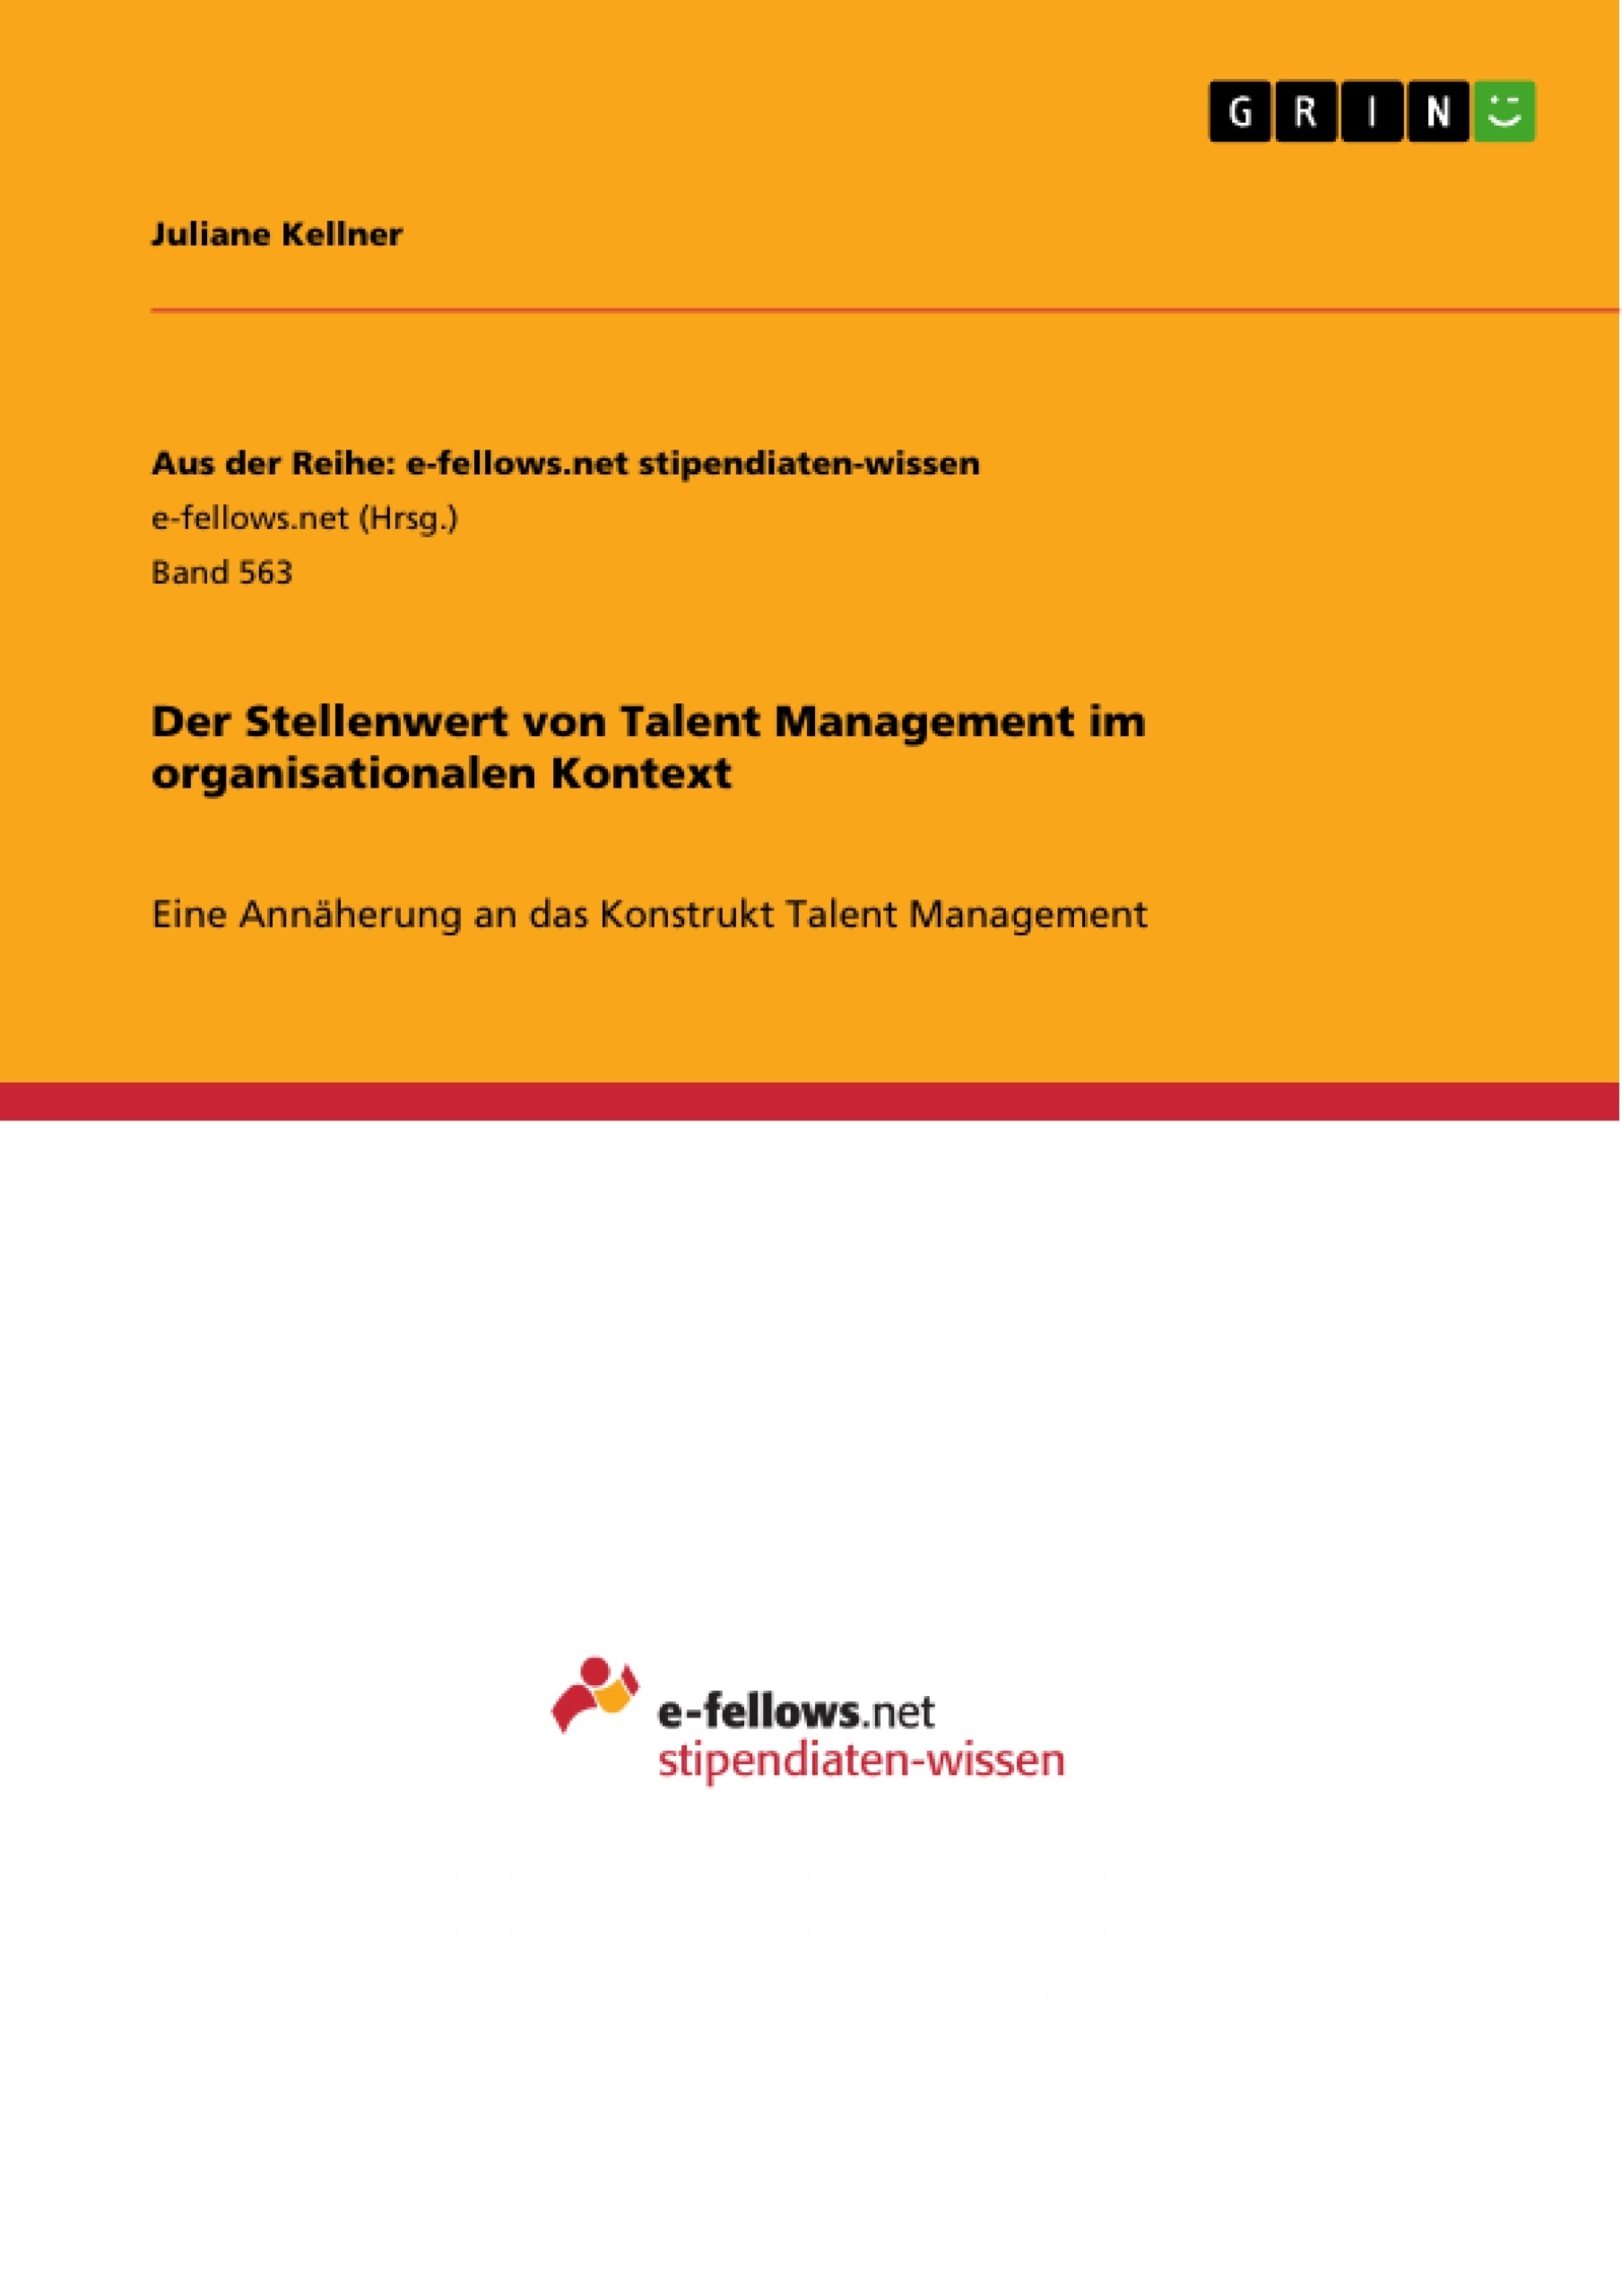 Title: Der Stellenwert von Talent Management im organisationalen Kontext